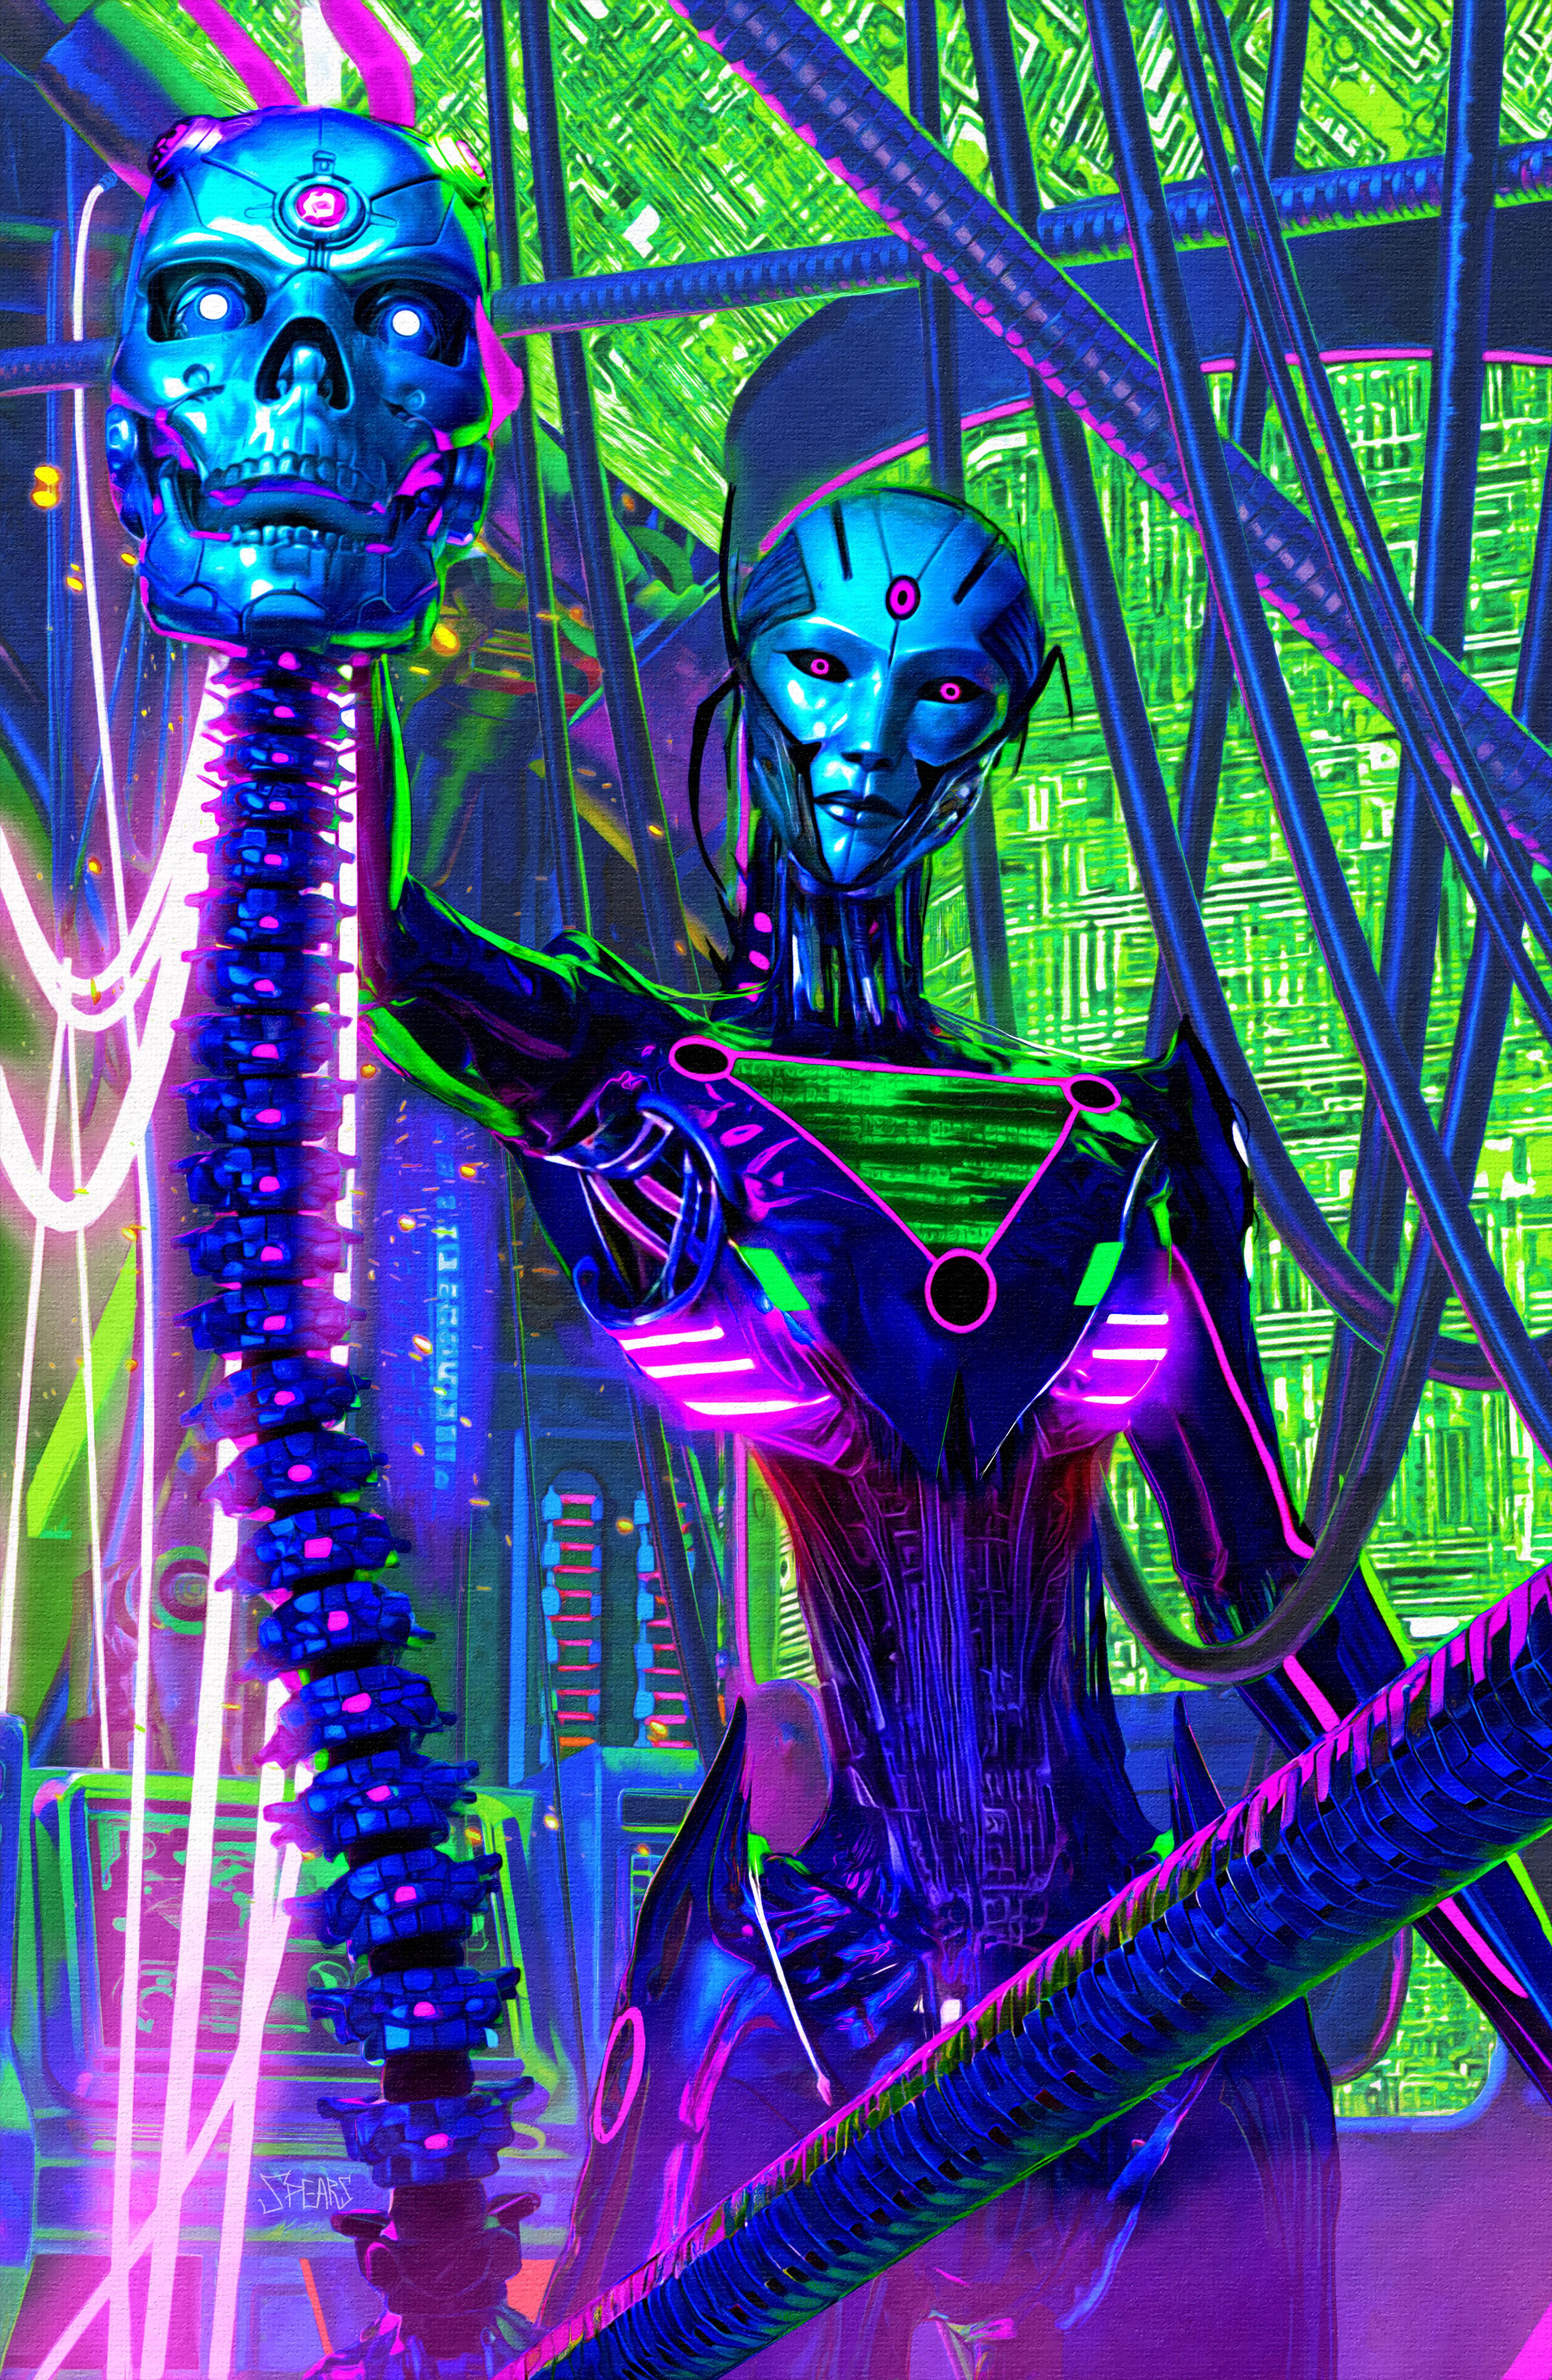 Capa da variante de lanças da Action Comics 1065: Brainiac Queen segurando um crânio robótico.